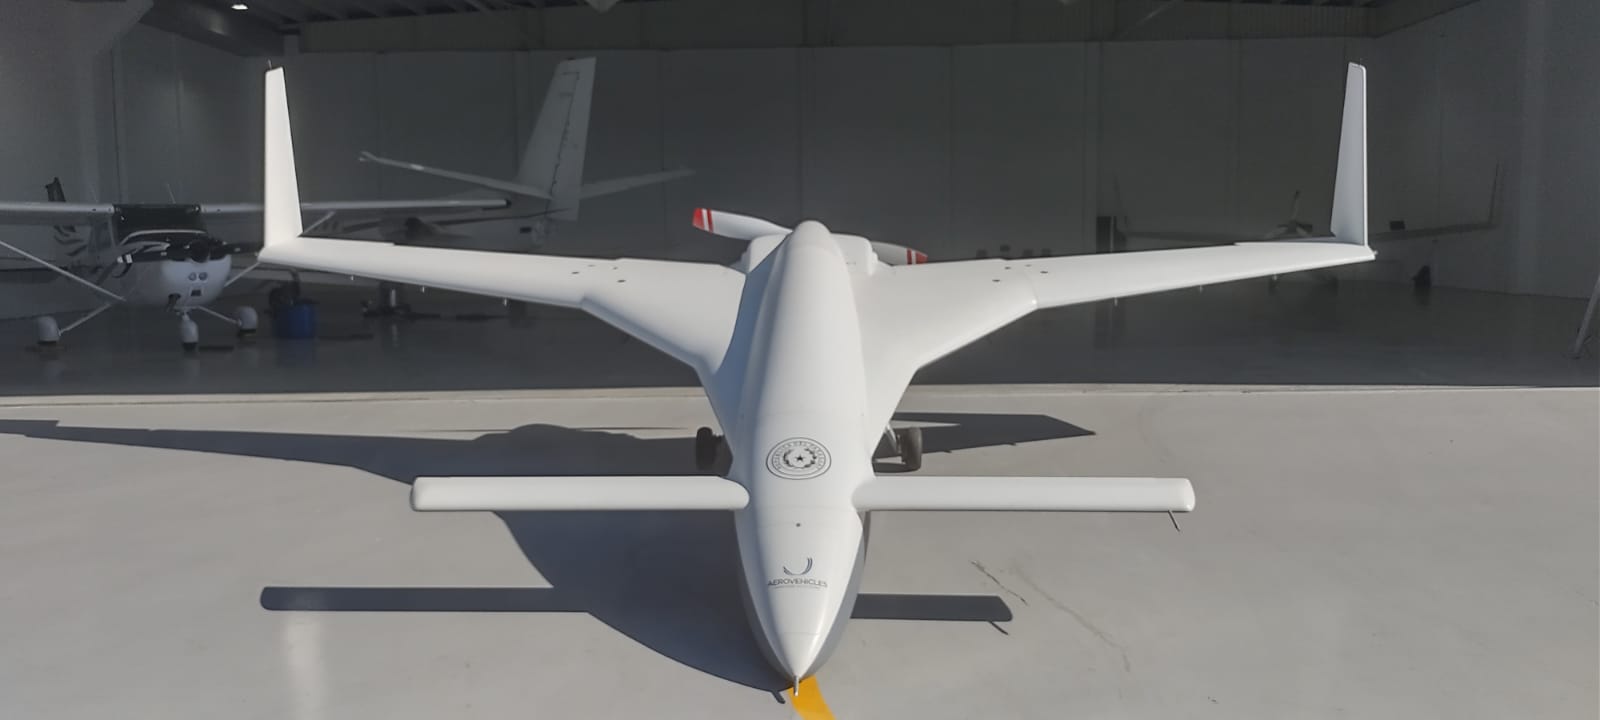 Berkut UAV Class III - MboPY